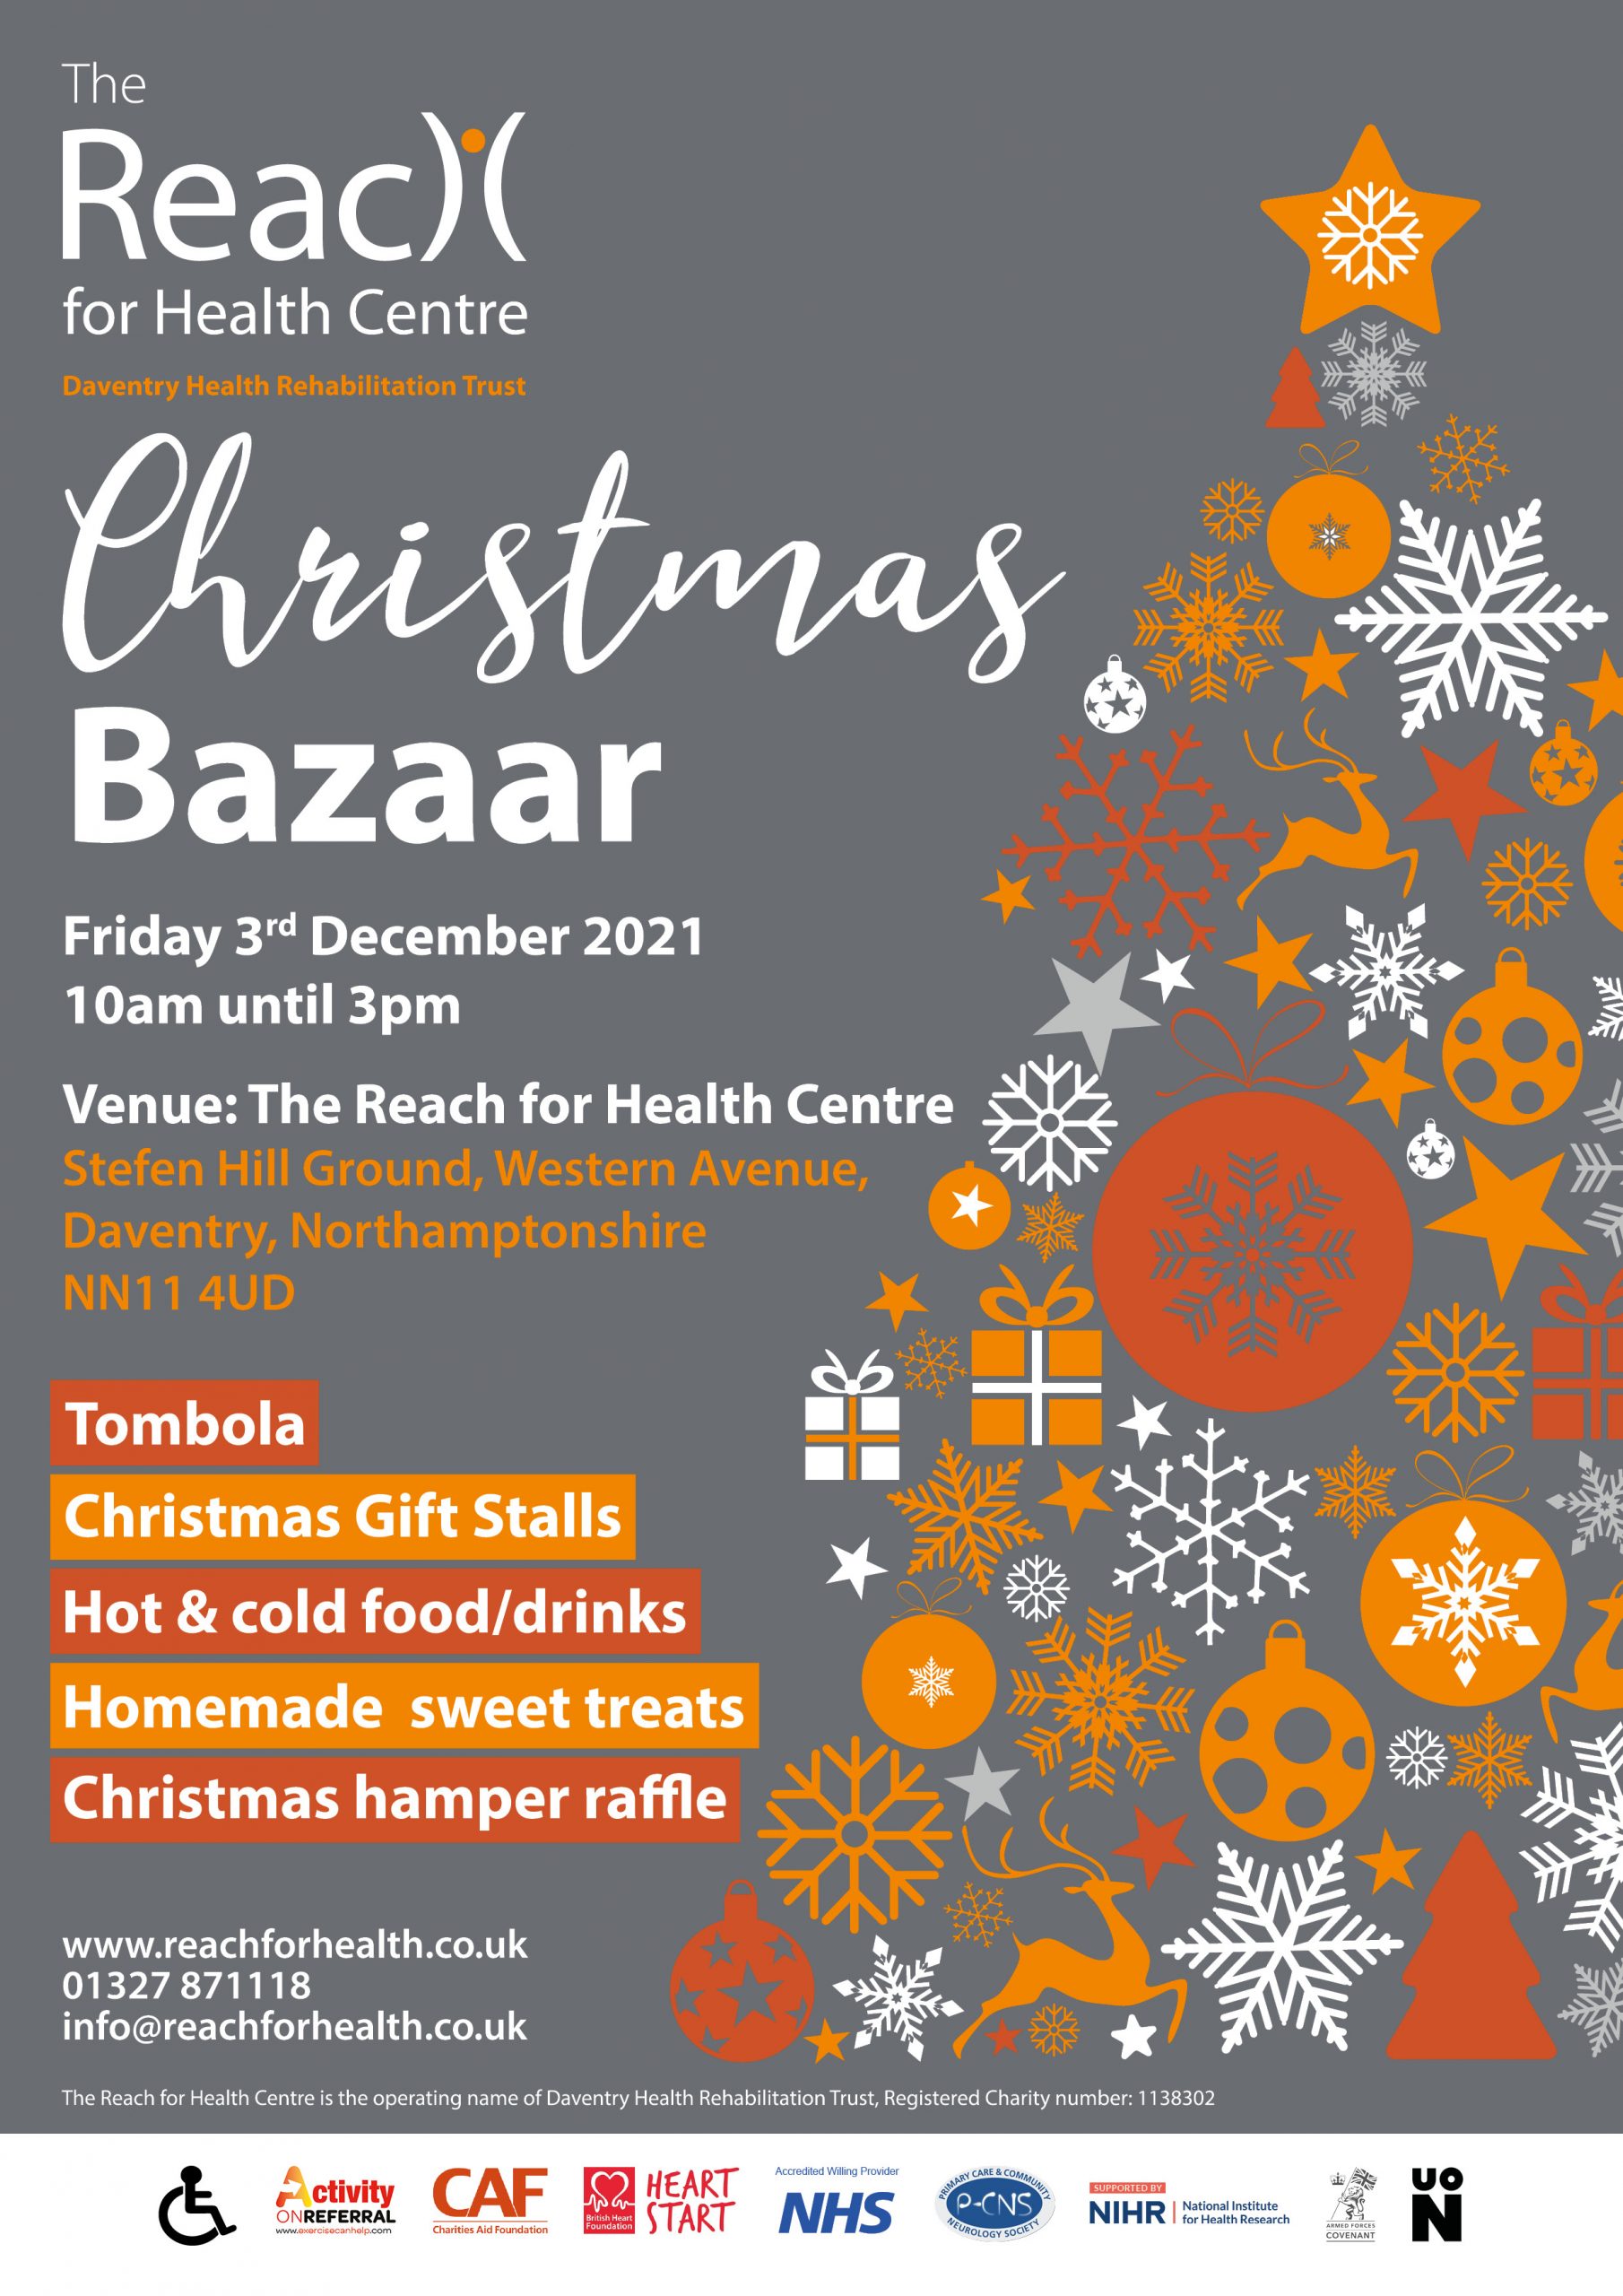 The Reach for Health Centre Christmas Bazaar